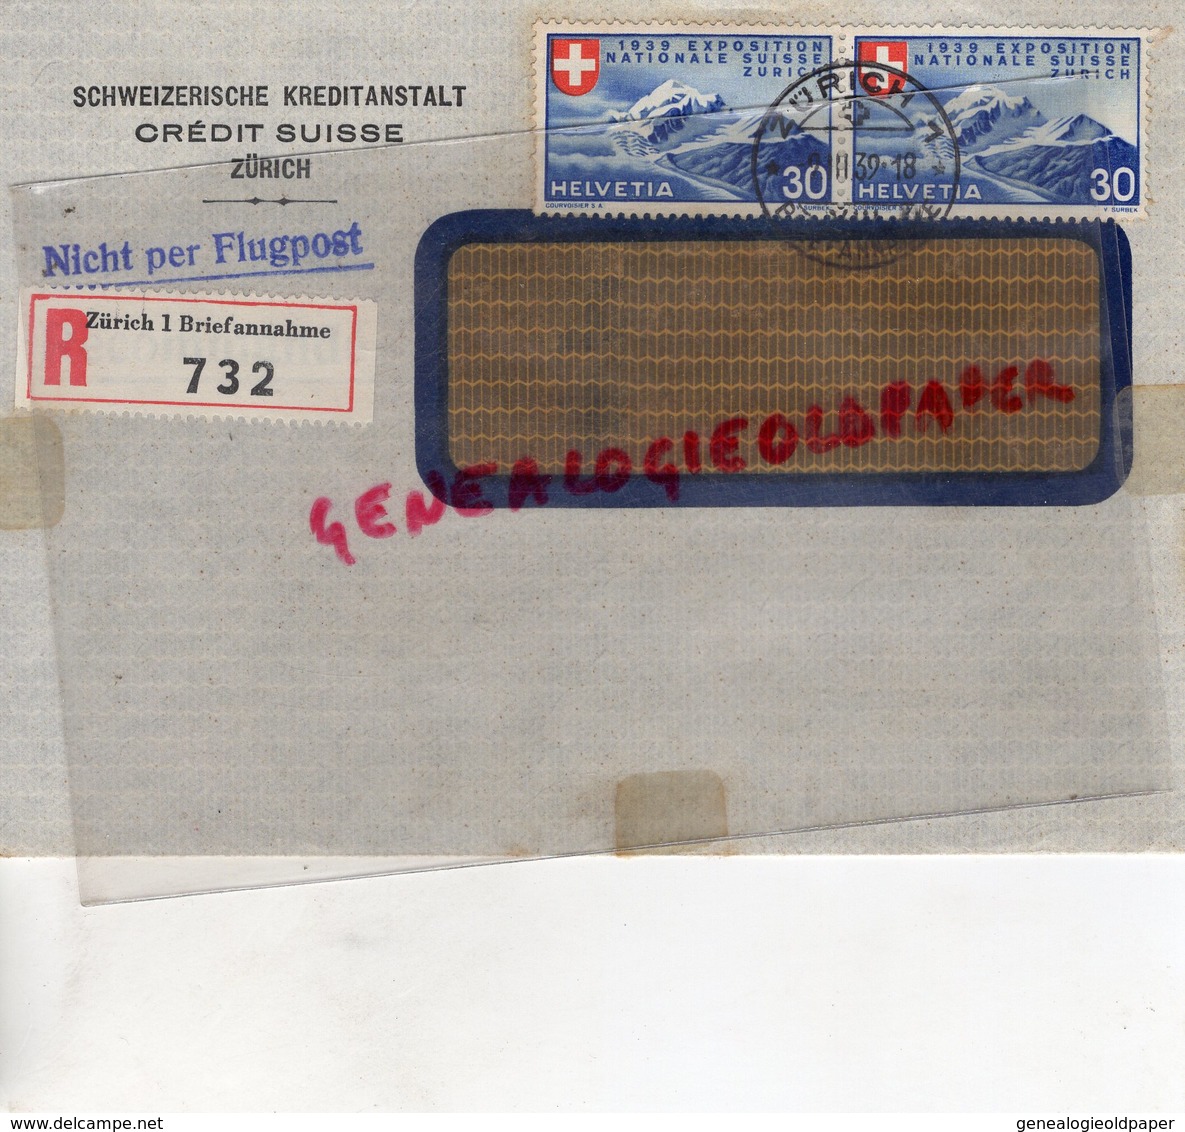 SUISSE - ZURICH- RARE ENVELOPPE SCHWEIZERISCHE KREDITANSTALT- CREDIT SUISSE -1939- NICHT PER FLUGPOST-SAINT JUNIEN 87 - Switzerland